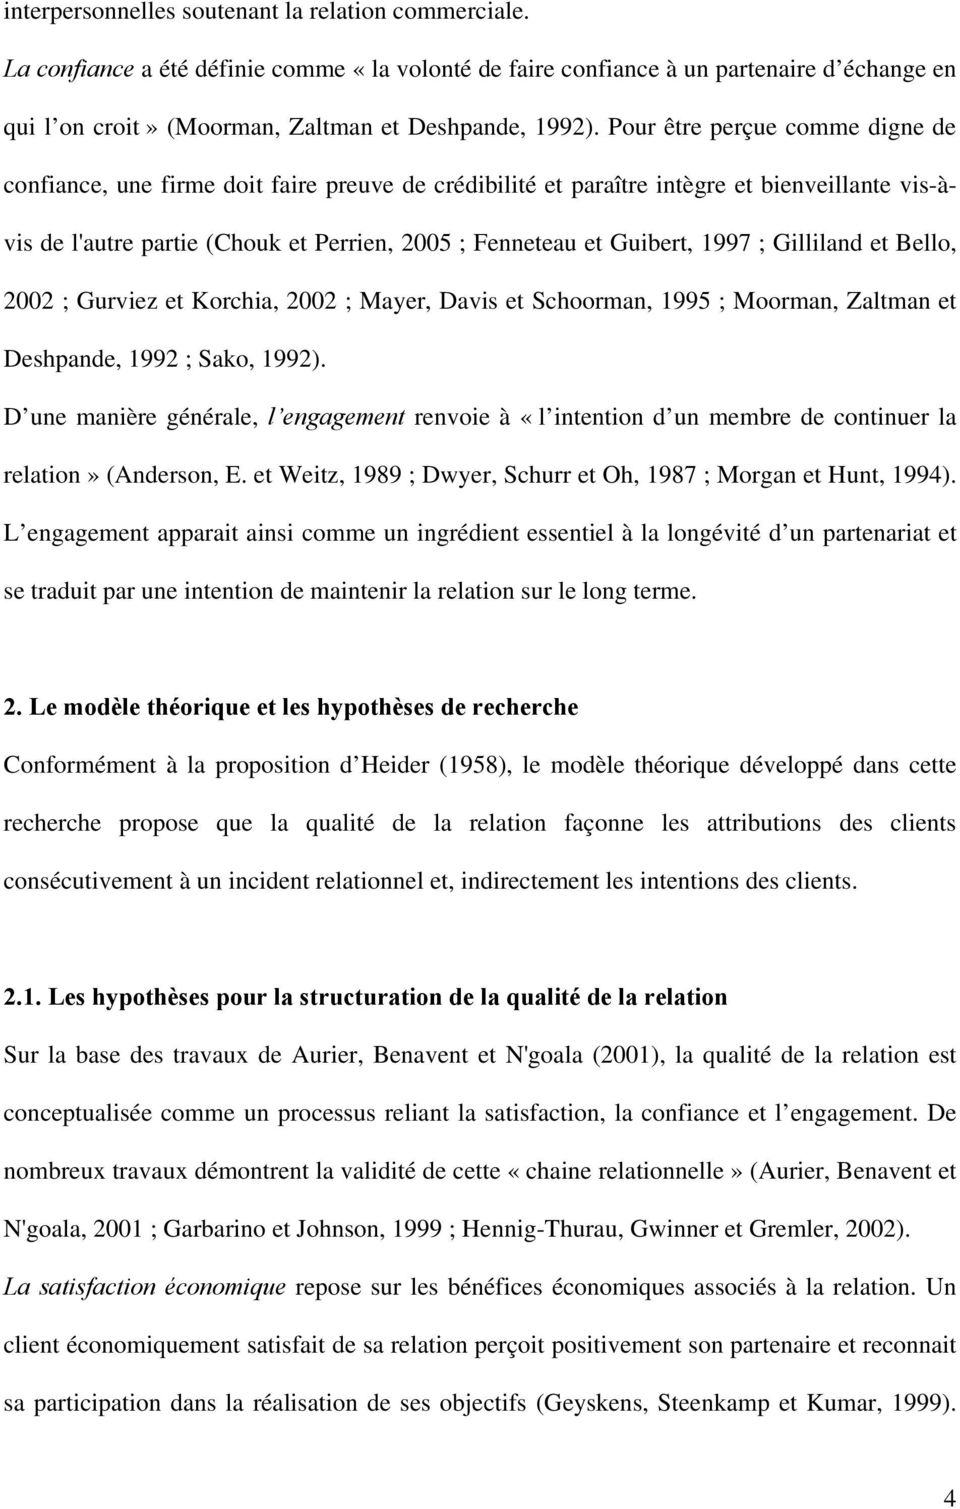 1997 ; Gilliland et Bello, 2002 ; Gurviez et Korchia, 2002 ; Mayer, Davis et Schoorman, 1995 ; Moorman, Zaltman et Deshpande, 1992 ; Sako, 1992).